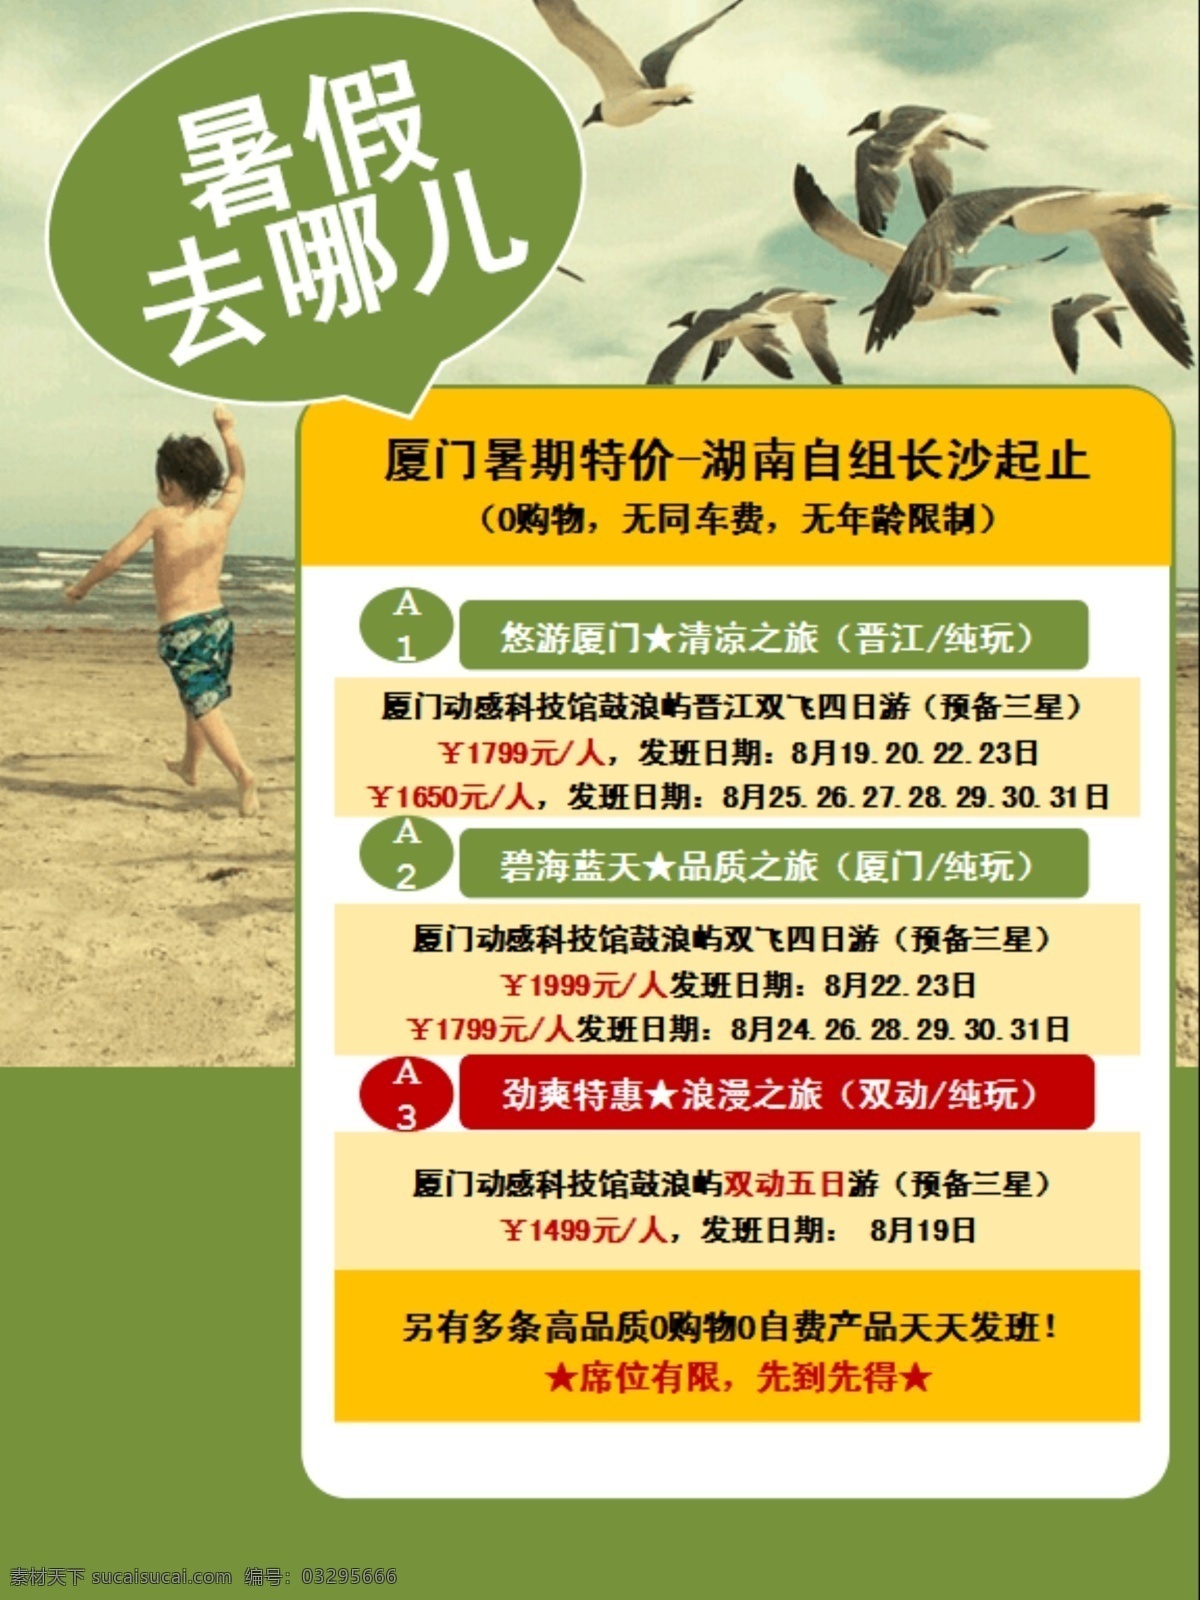 旅行宣传 厦门旅游 广告宣传 宣传单 厦门旅行 旅游行程